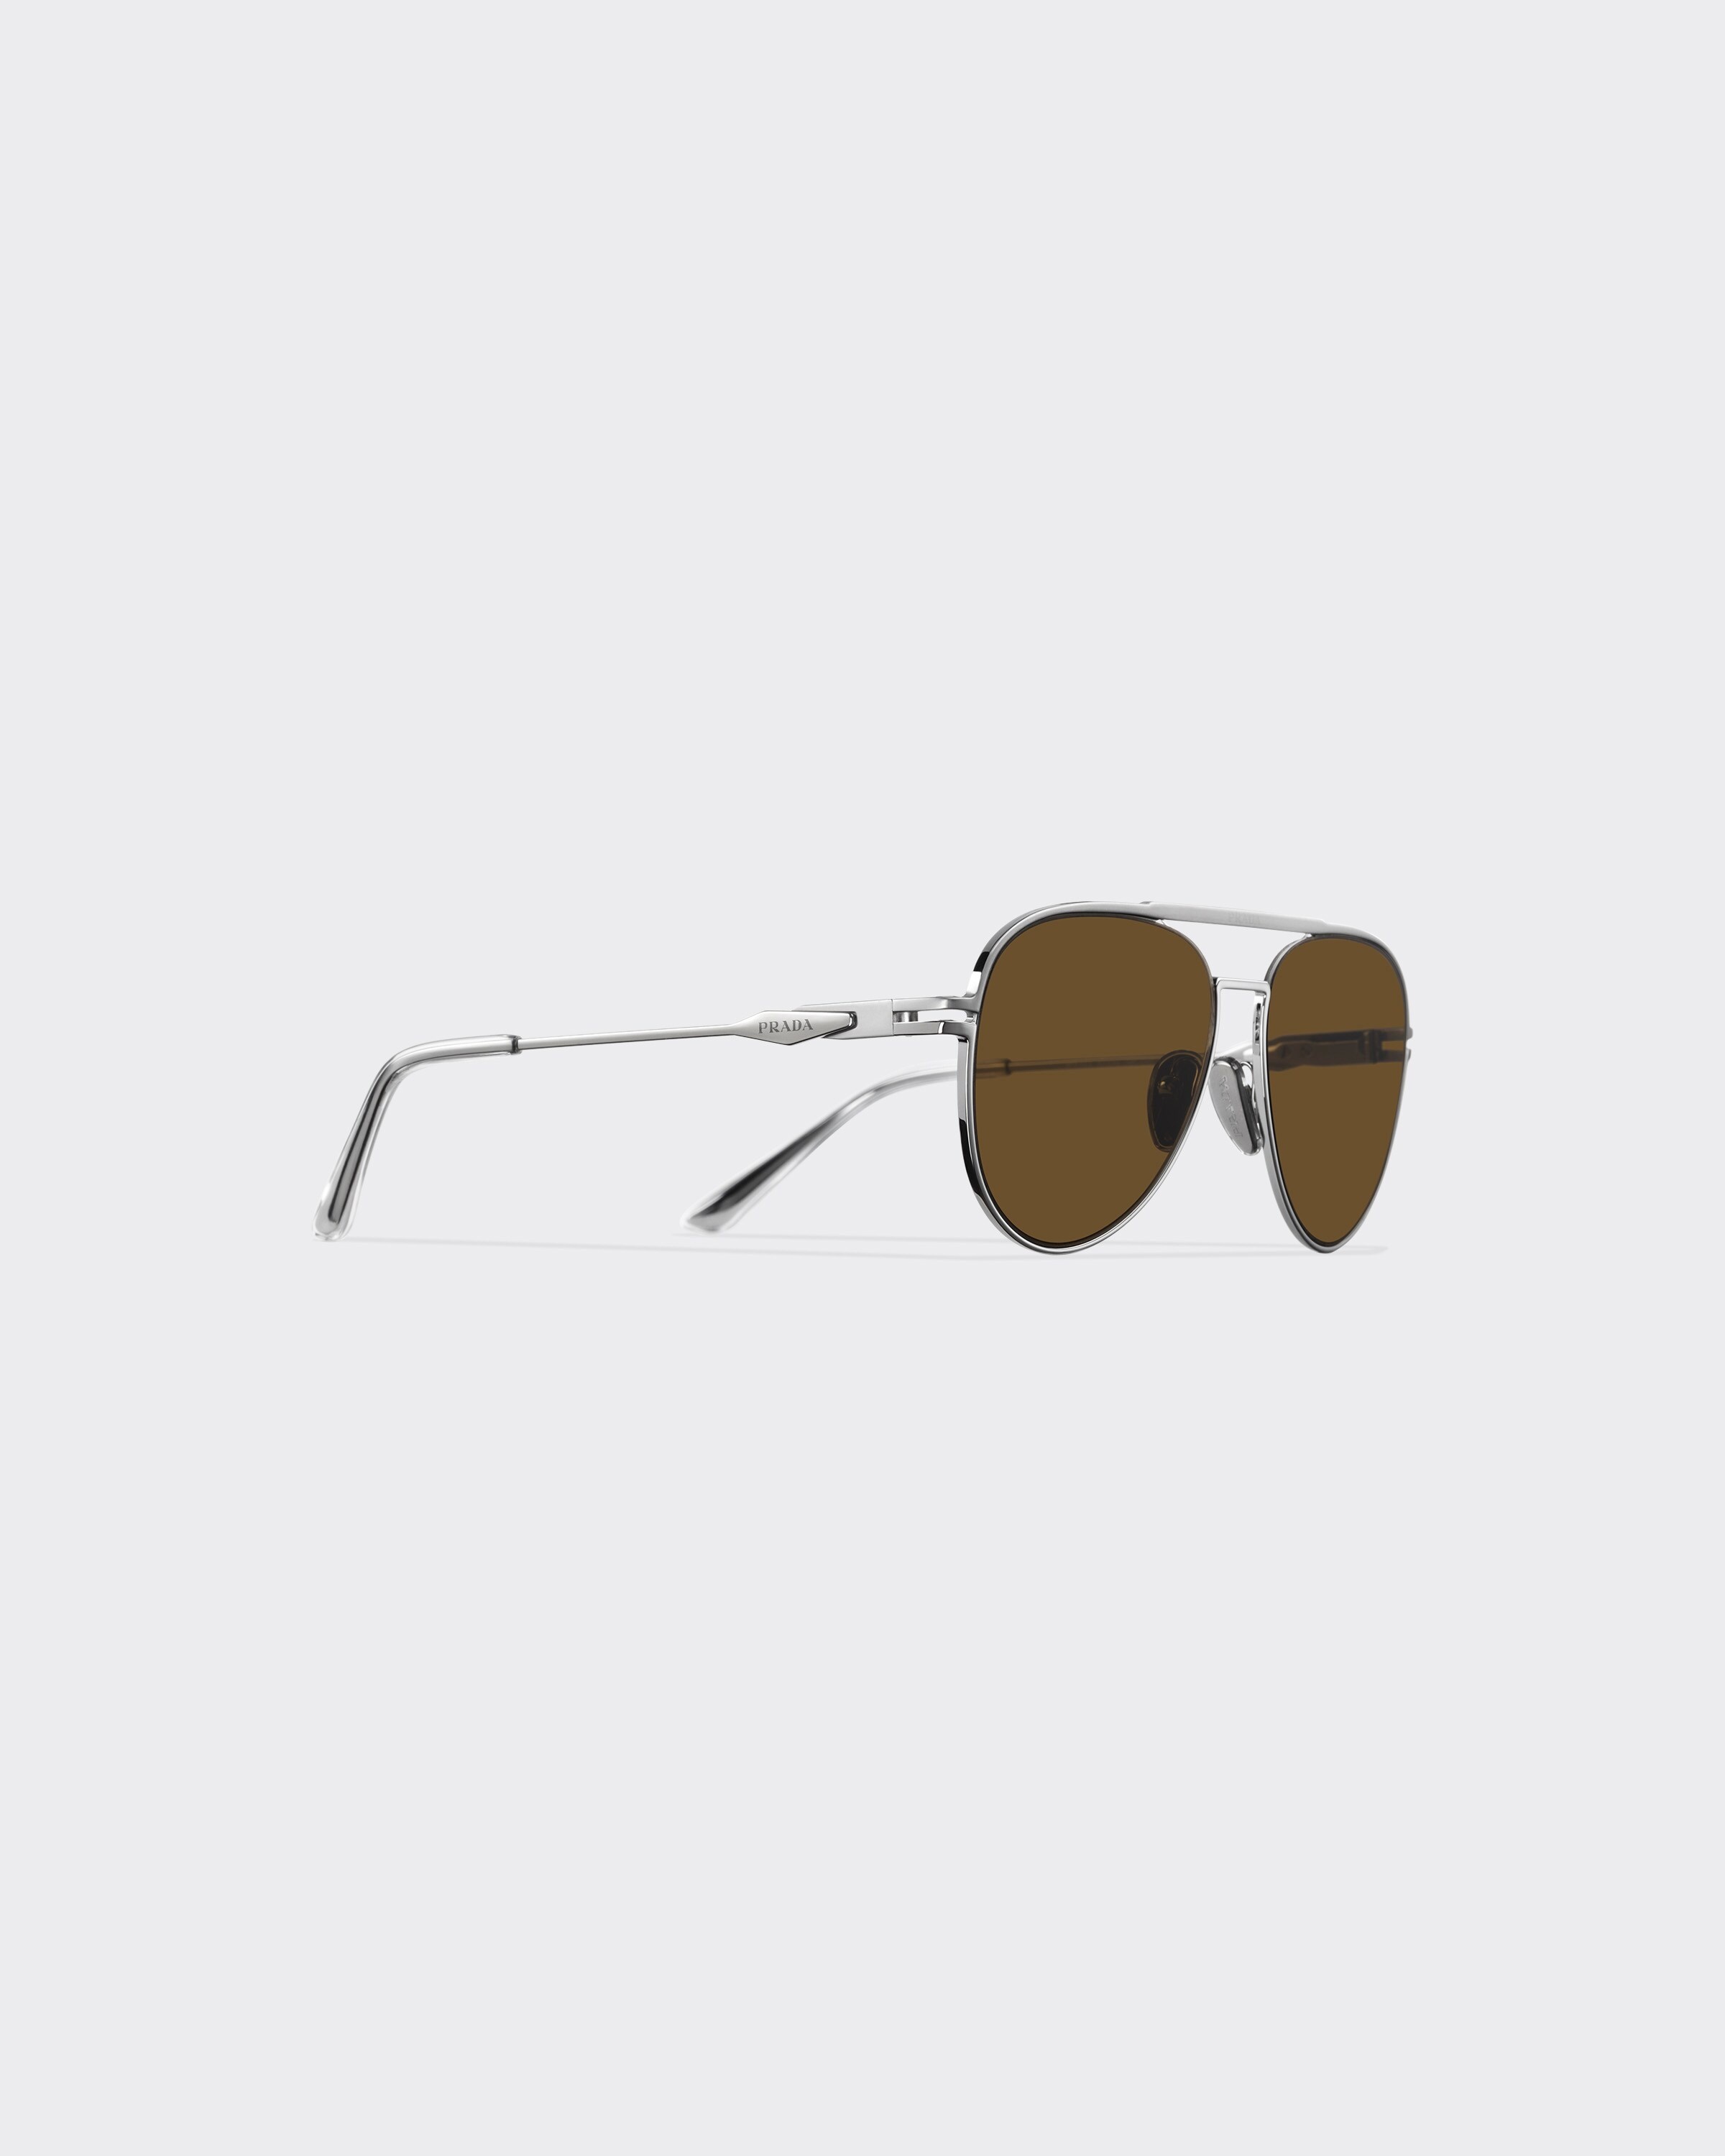 Sunglasses with Prada logo - 3